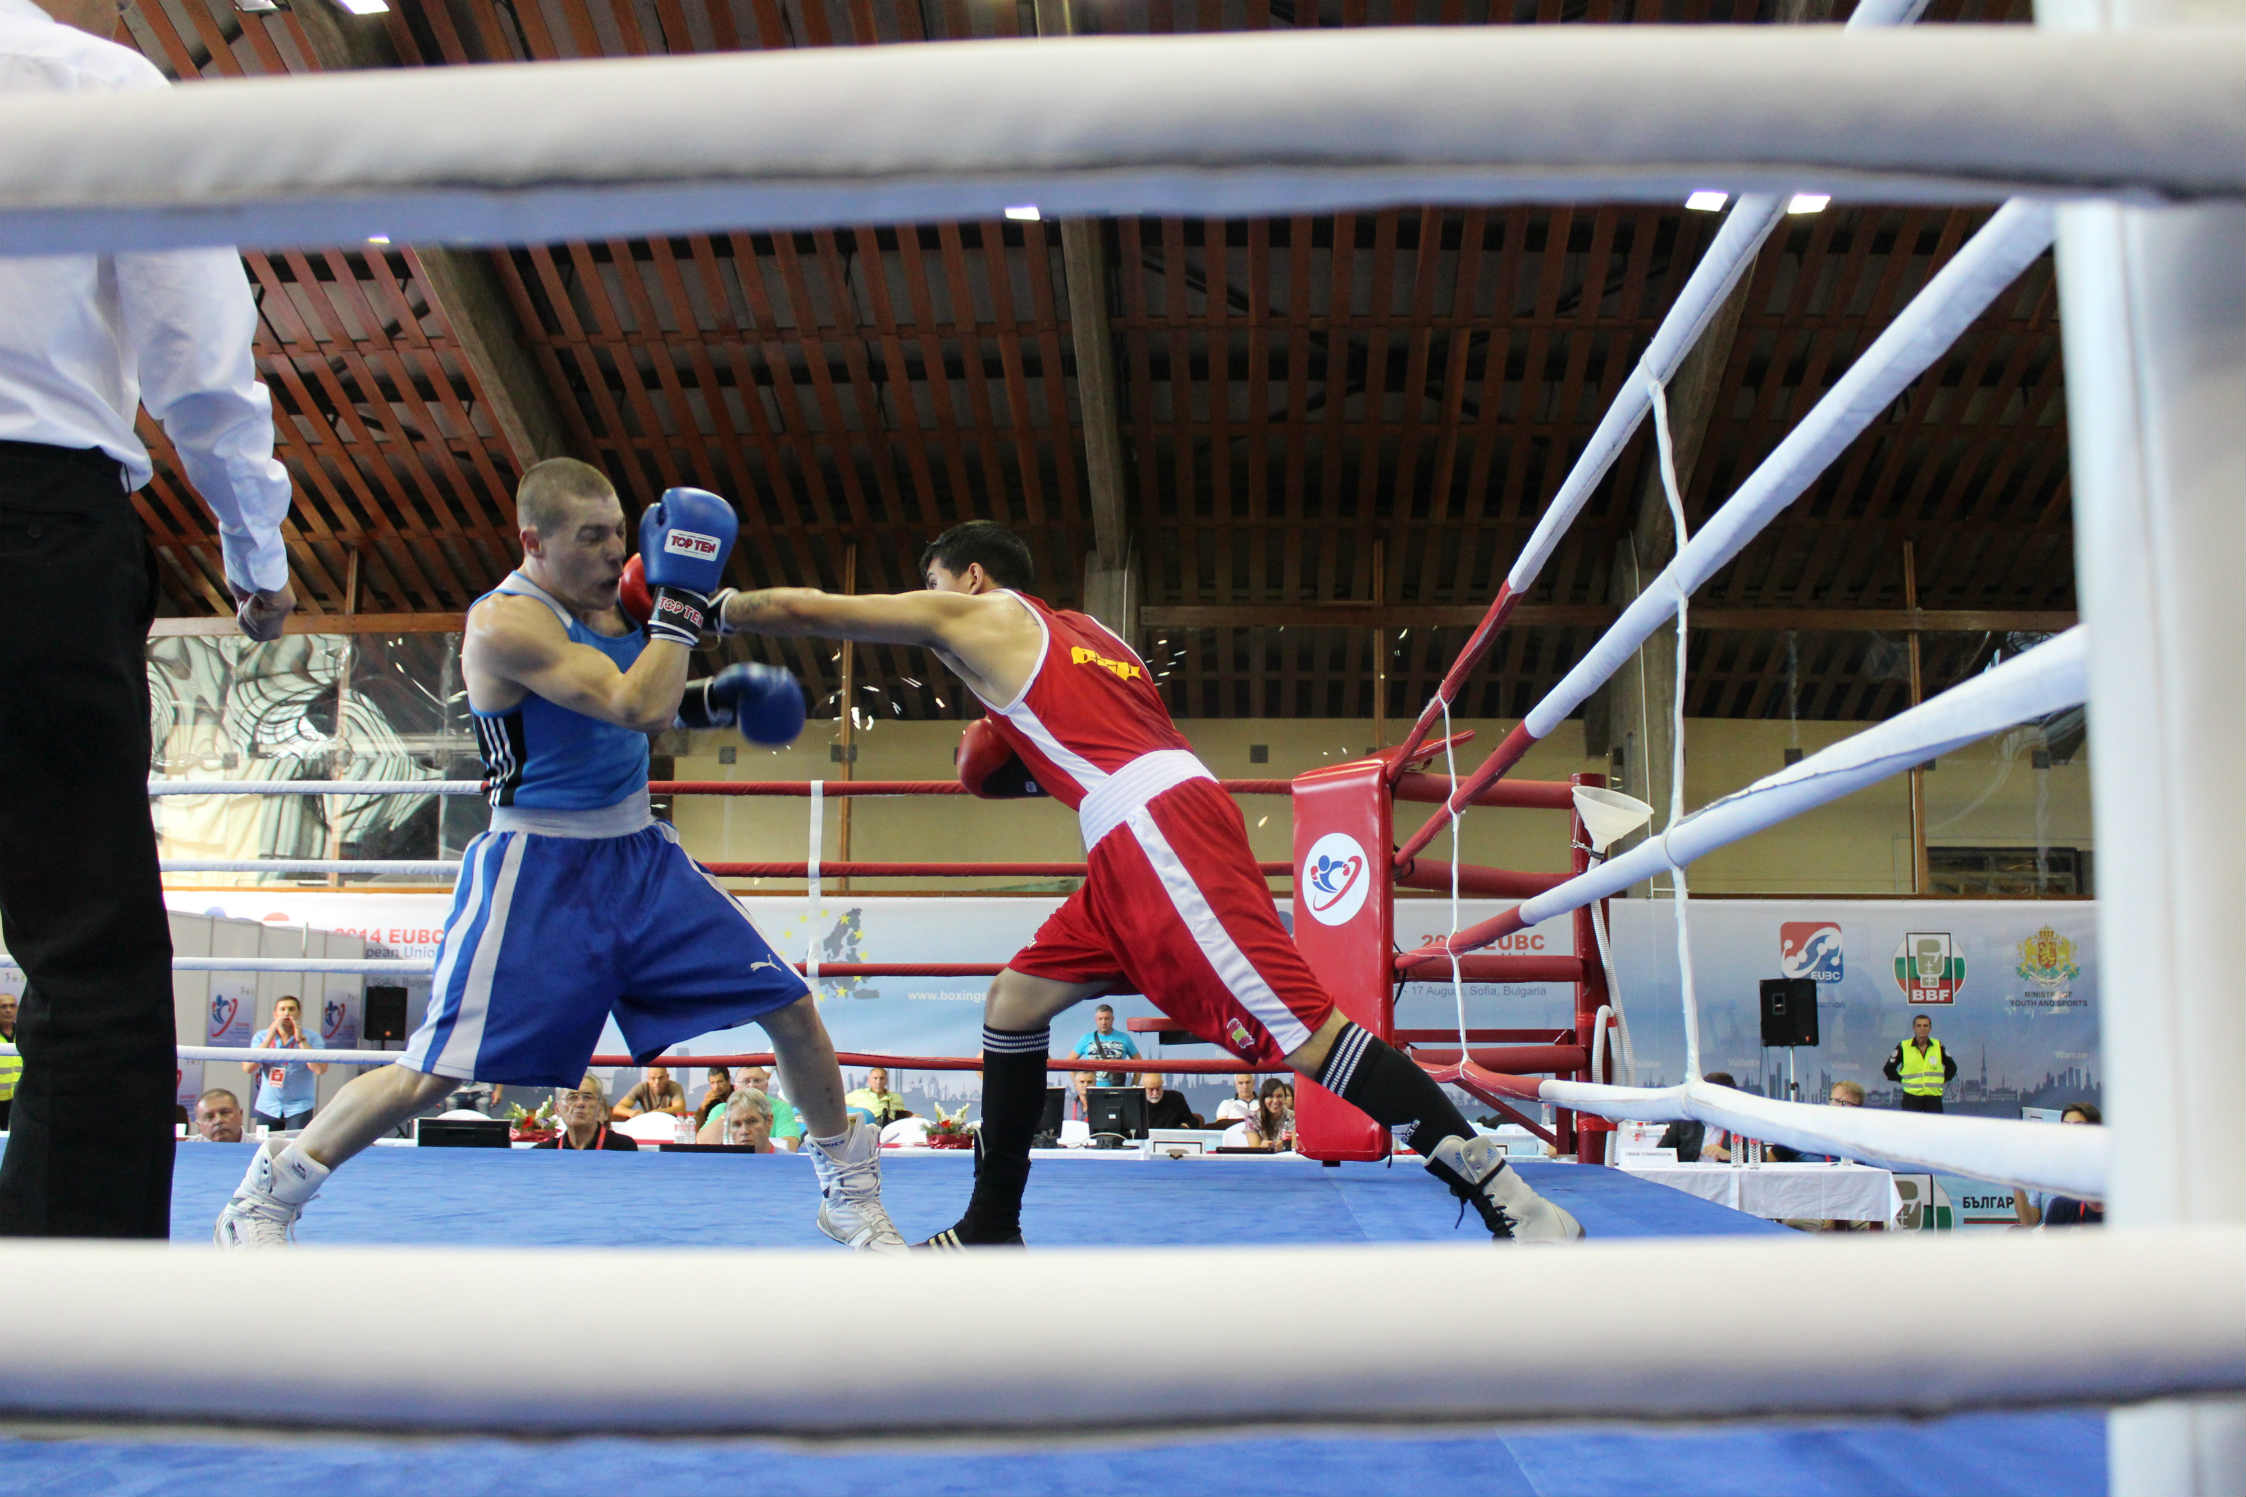 EUBC EU Boxing Championships #Sofia14 - Day 7 - Pausa del Torneo quest'oggi, domani 4 Azzurri sul ring per il pass verso le finalissime. Tutti i match live su sportmedia.tv